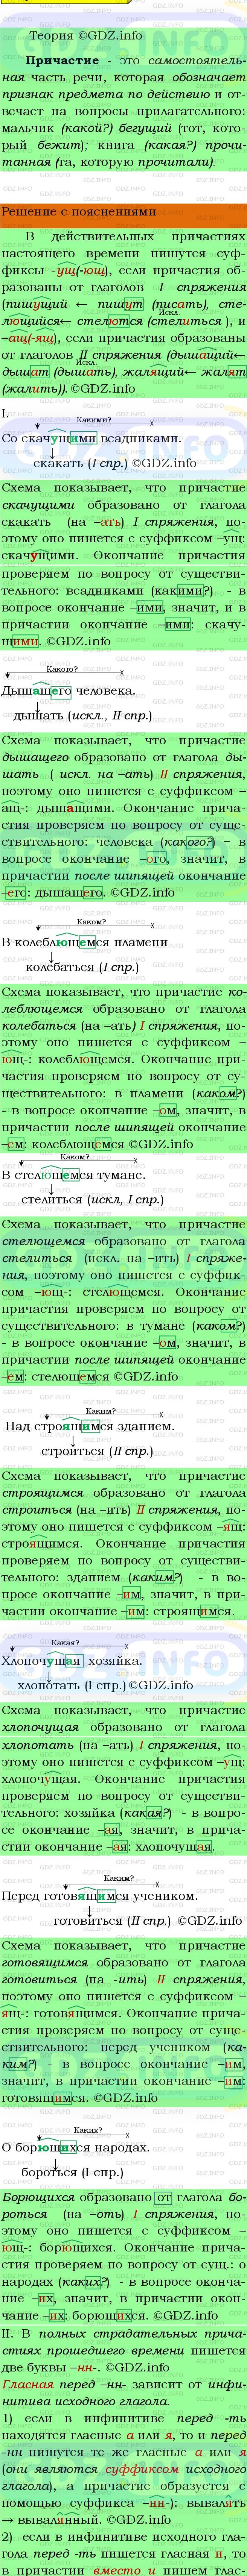 Фото подробного решения: Номер №48 из ГДЗ по Русскому языку 9 класс: Бархударов С.Г.